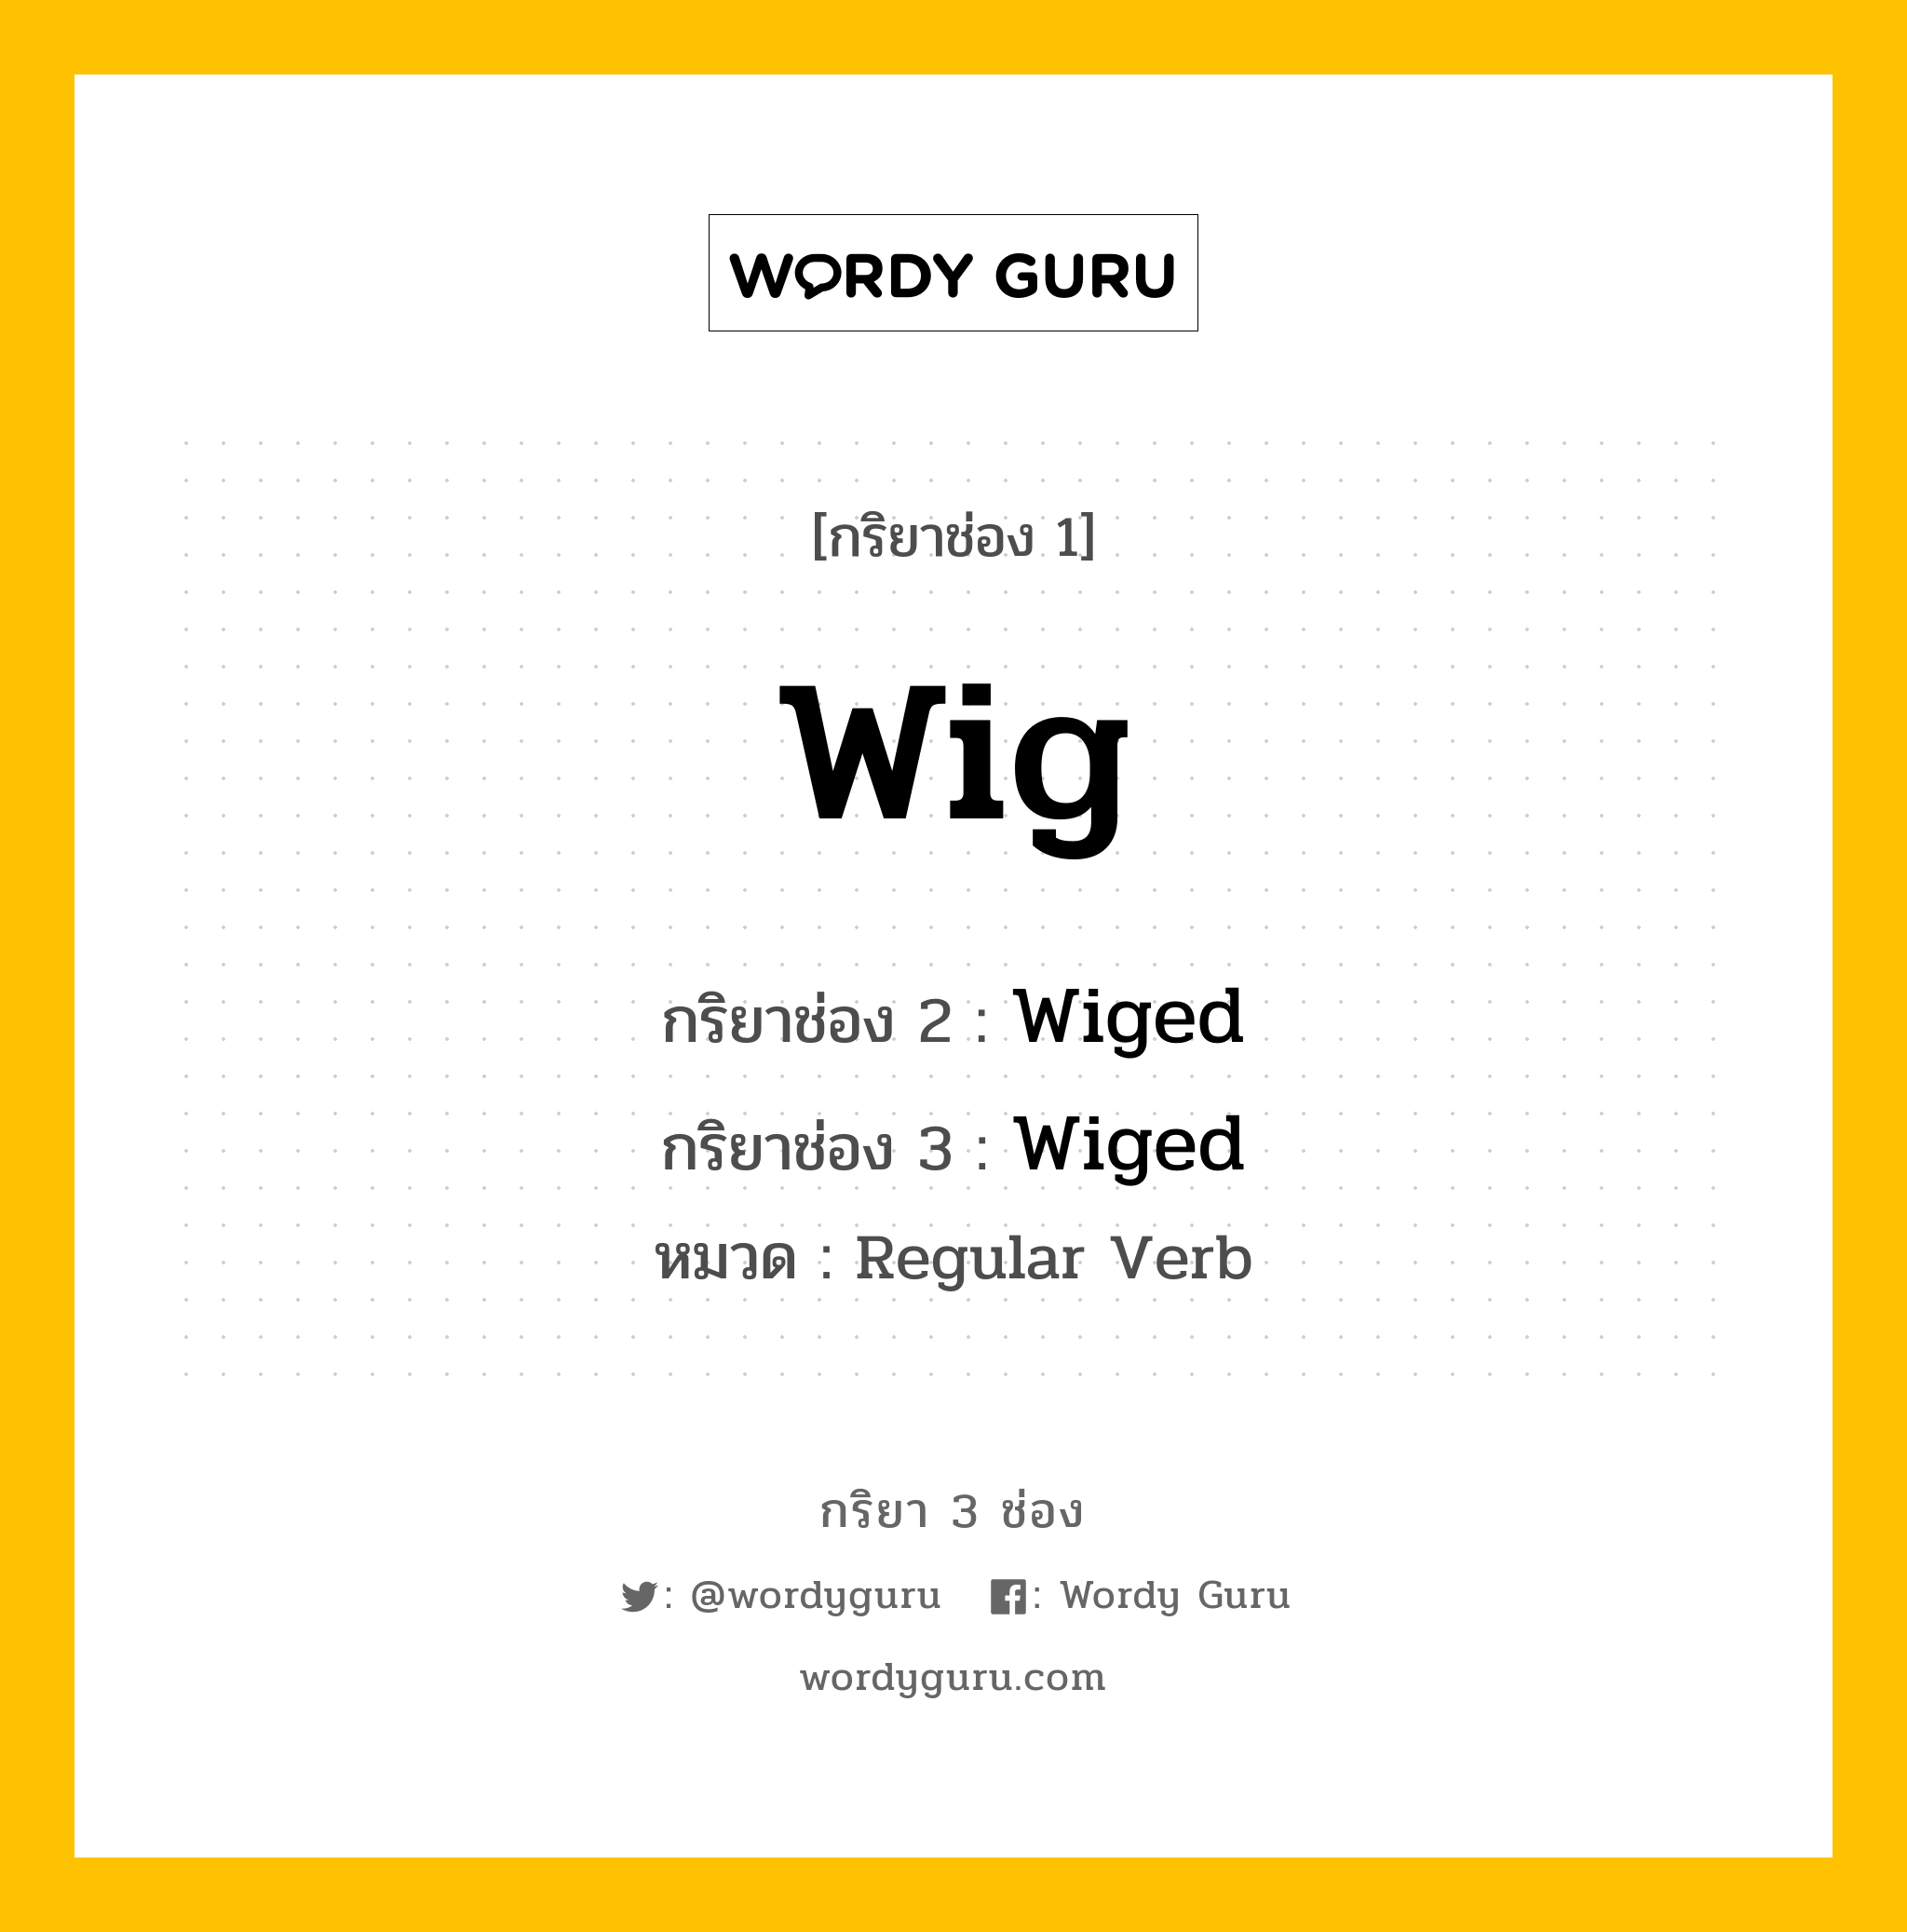 กริยา 3 ช่อง: Wig ช่อง 2 Wig ช่อง 3 คืออะไร, กริยาช่อง 1 Wig กริยาช่อง 2 Wiged กริยาช่อง 3 Wiged หมวด Regular Verb หมวด Regular Verb